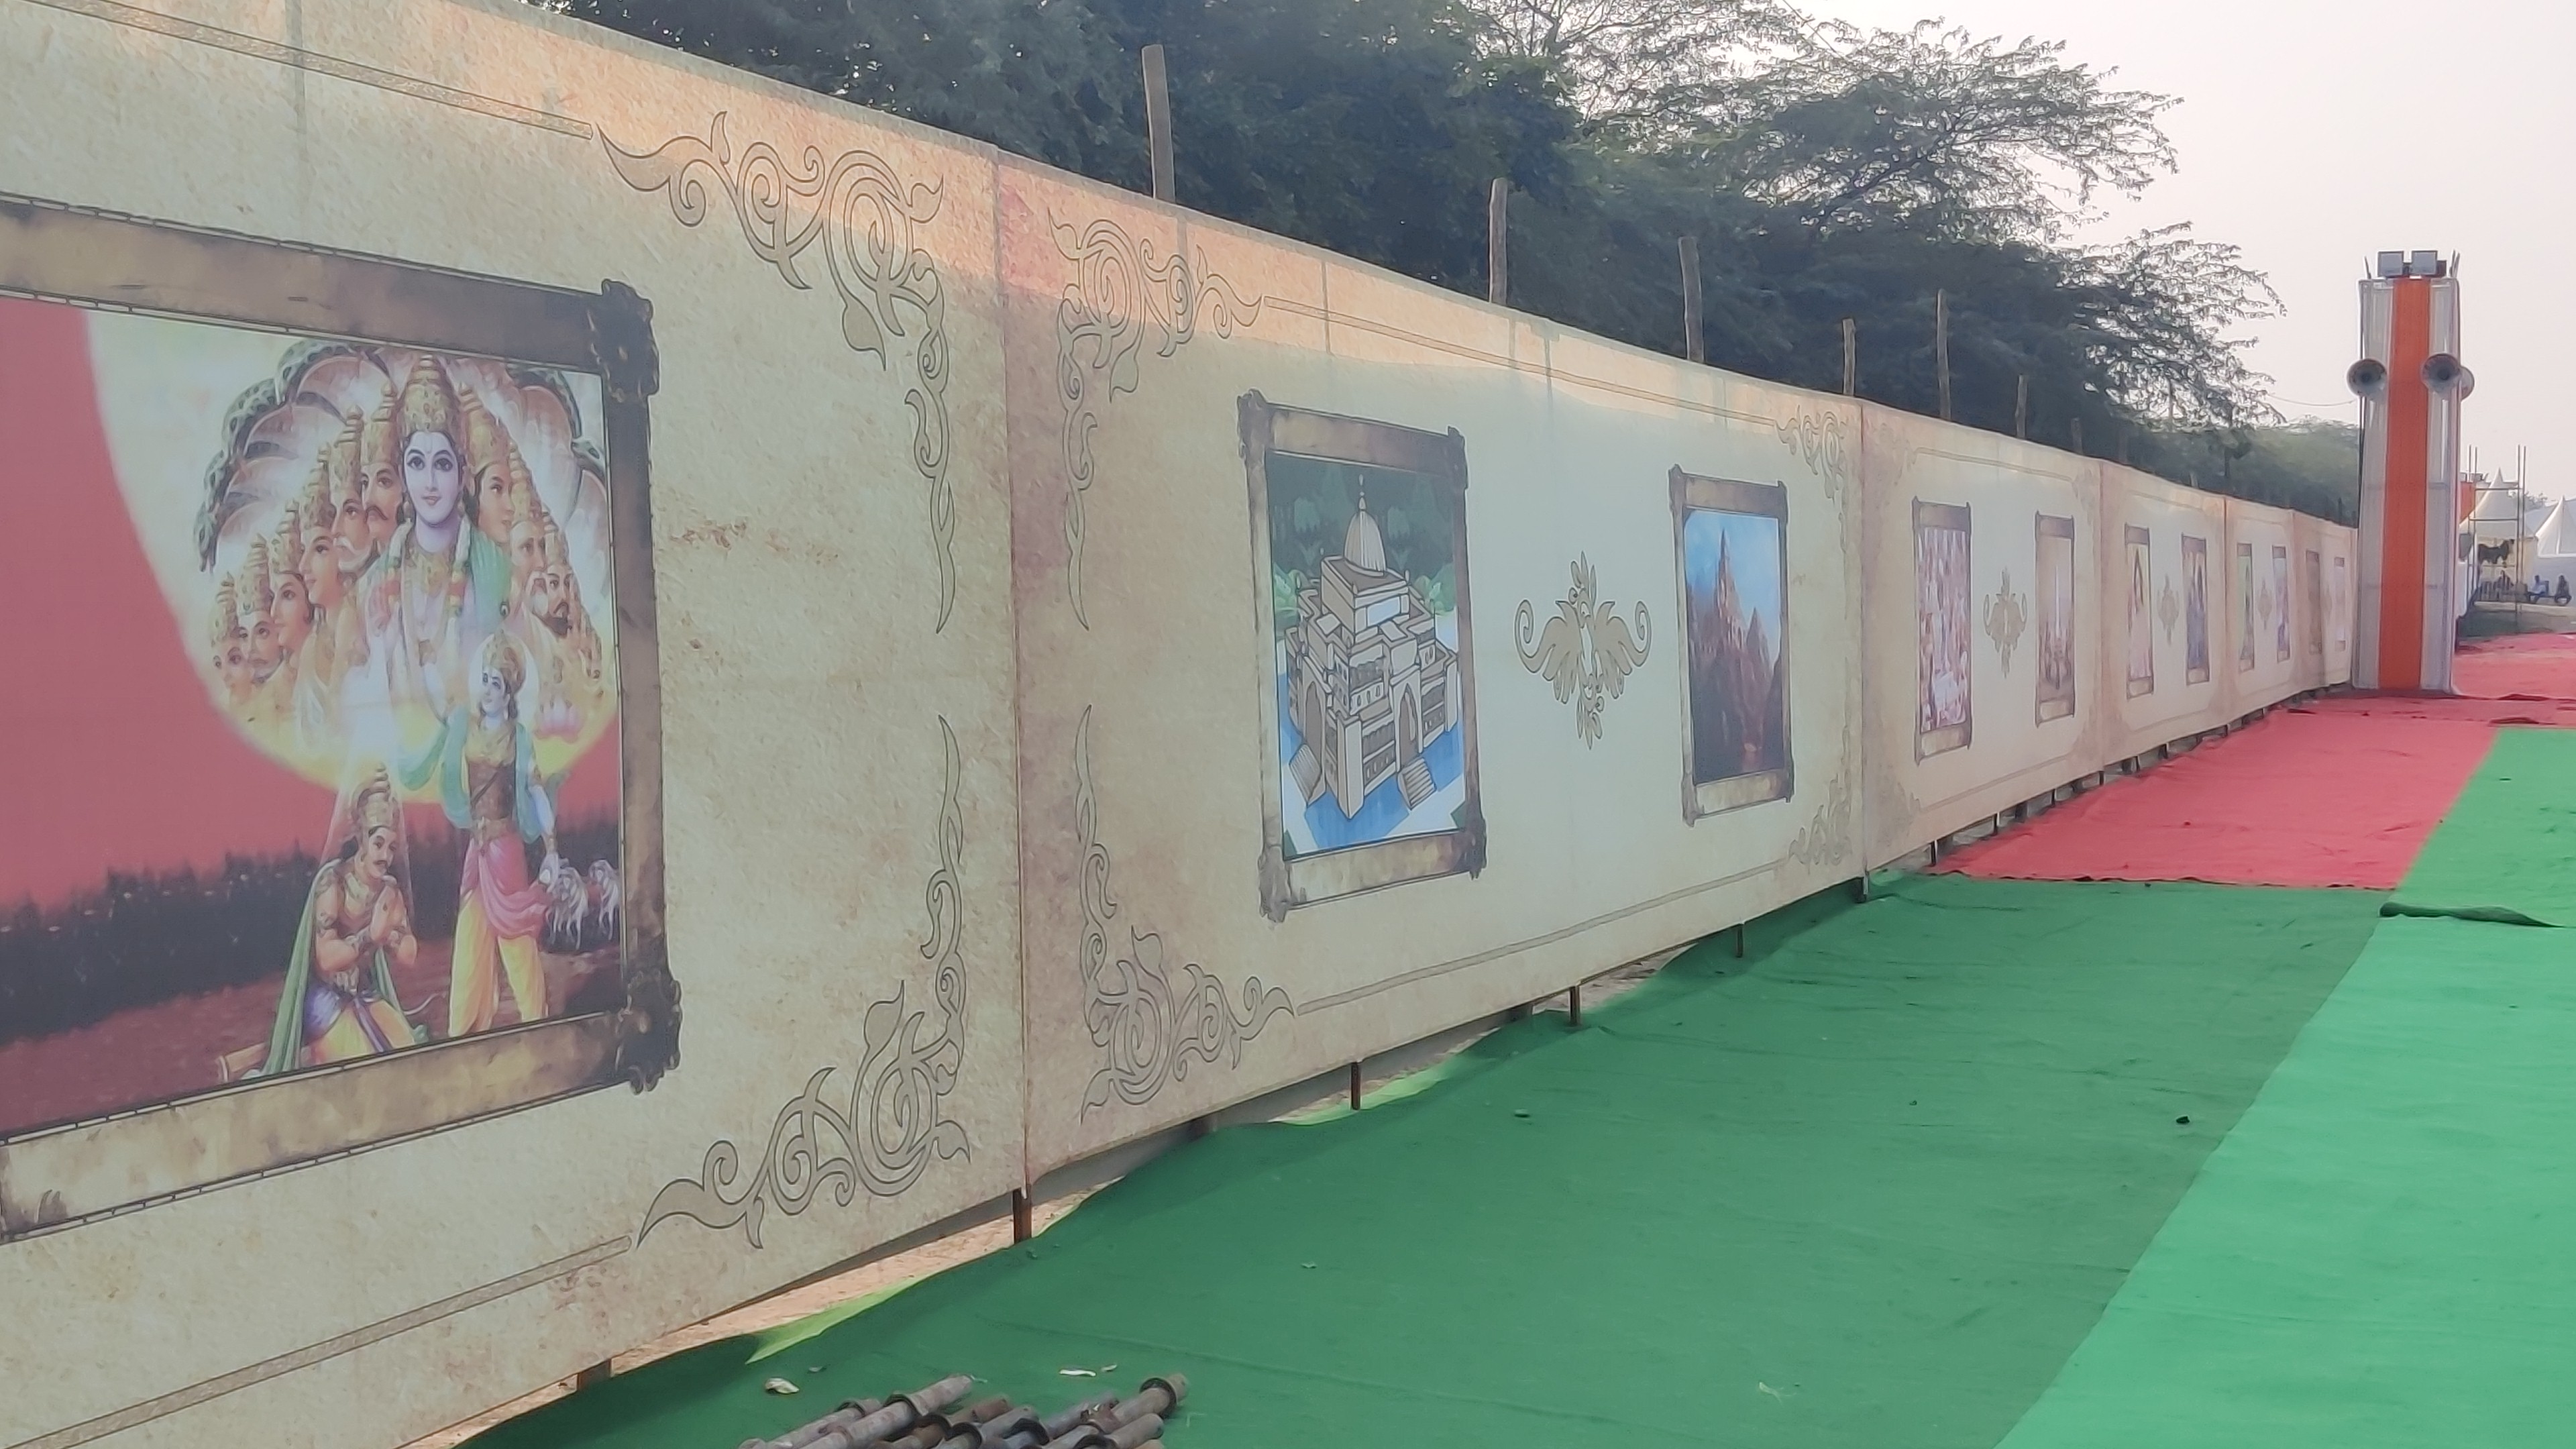 अखिल भारतीय विद्यार्थी परिषद के 69वें अधिवेशन में दिल्ली के ऐतिहासिक नाम इंद्रप्रस्थ के तर्ज पर वास्तु कला और चित्रकला की प्रदर्शनी लगाकर एक नया शहर बसाया जाएगा.